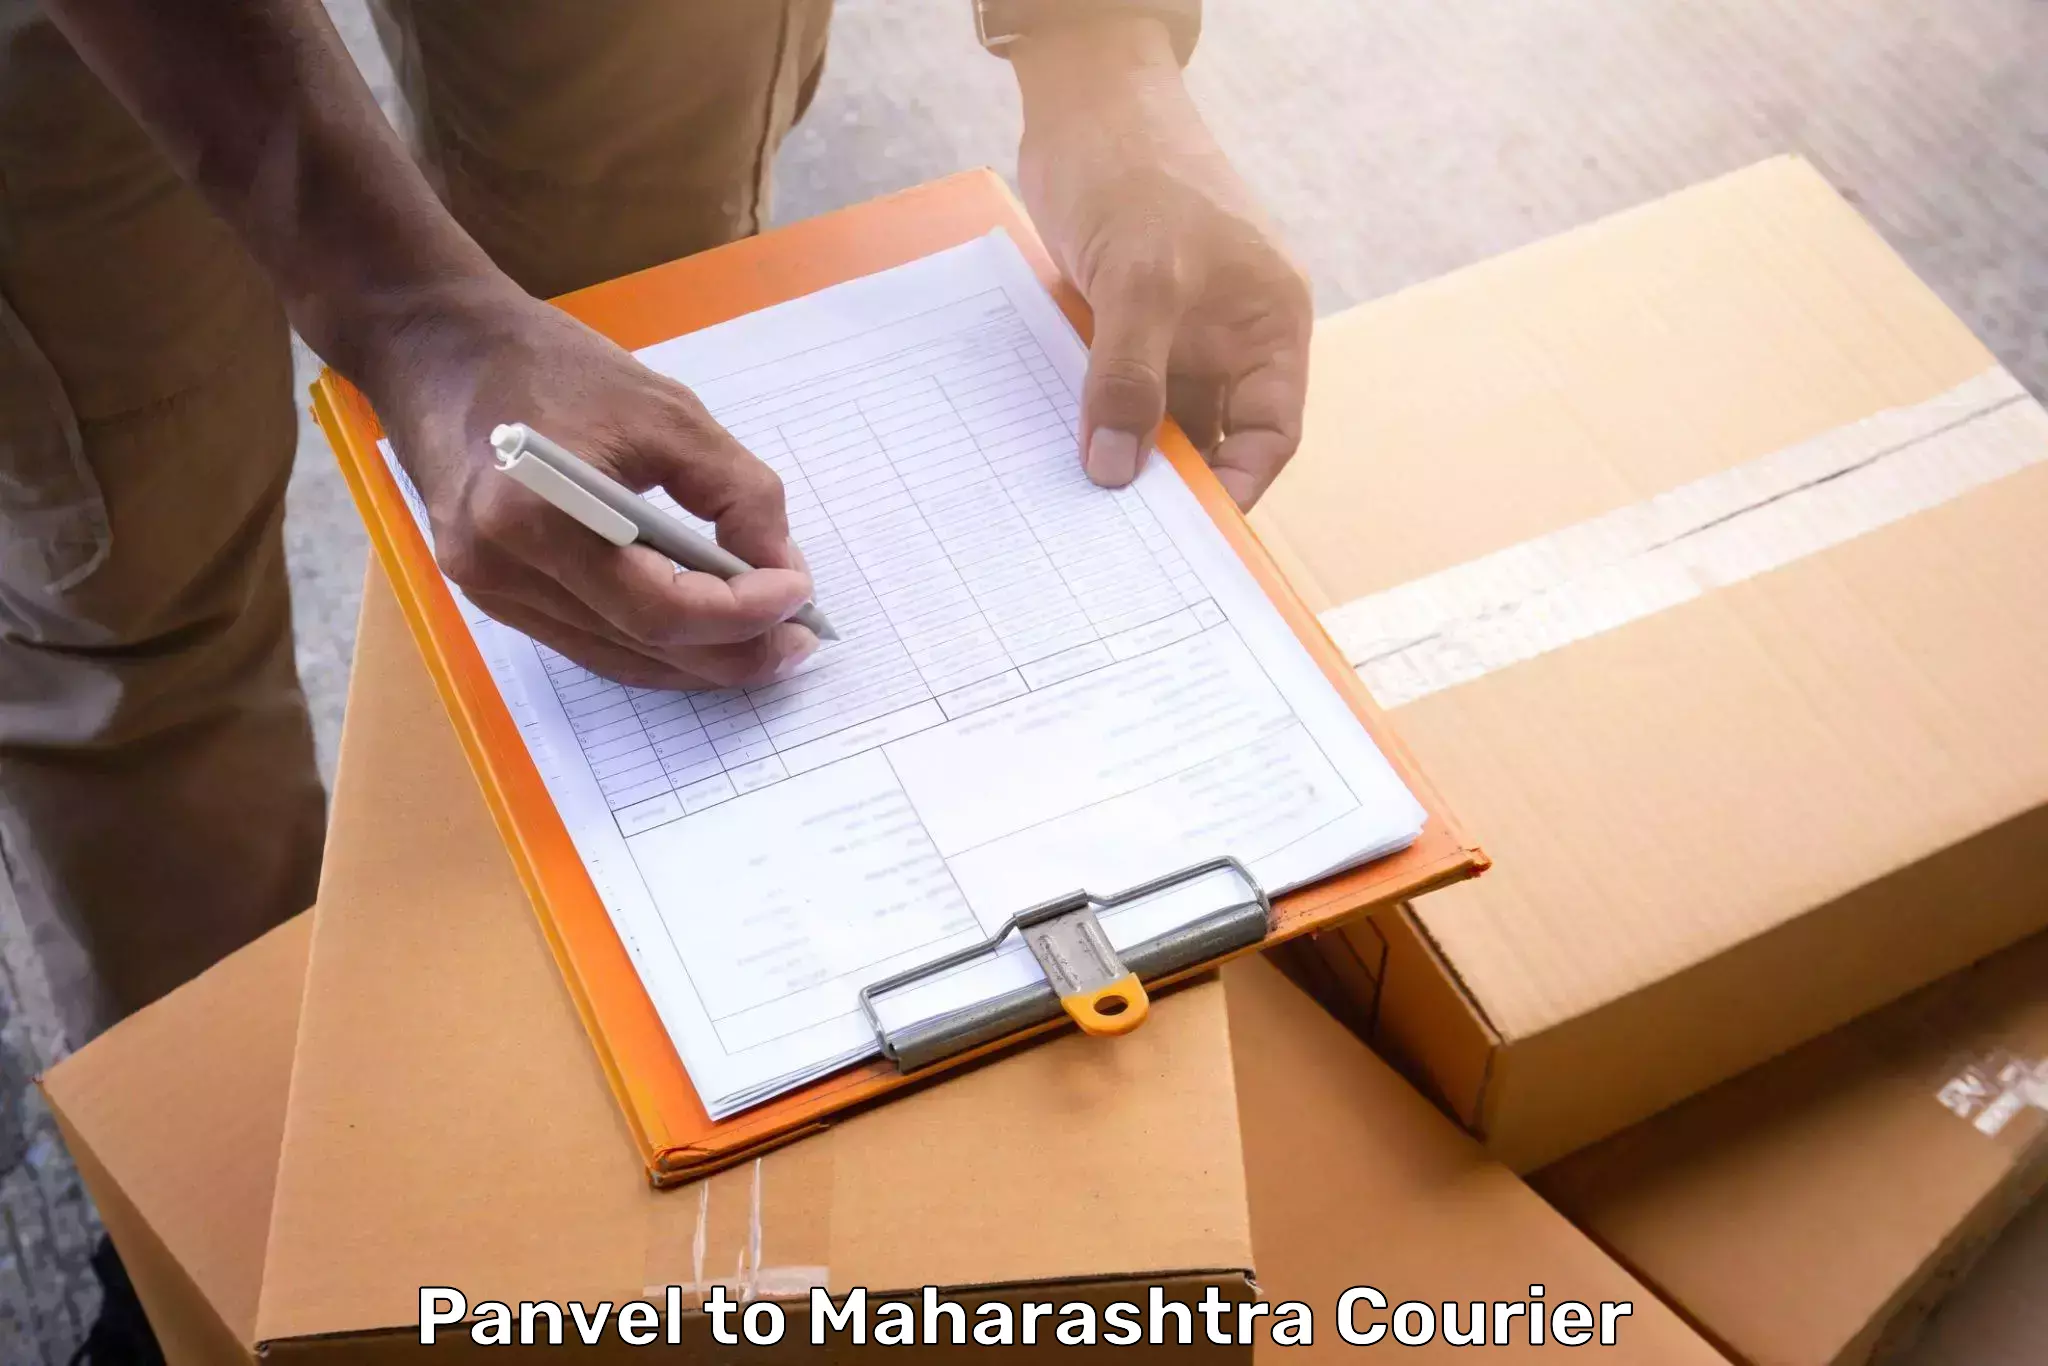 Luggage shipment tracking Panvel to Mumbai University